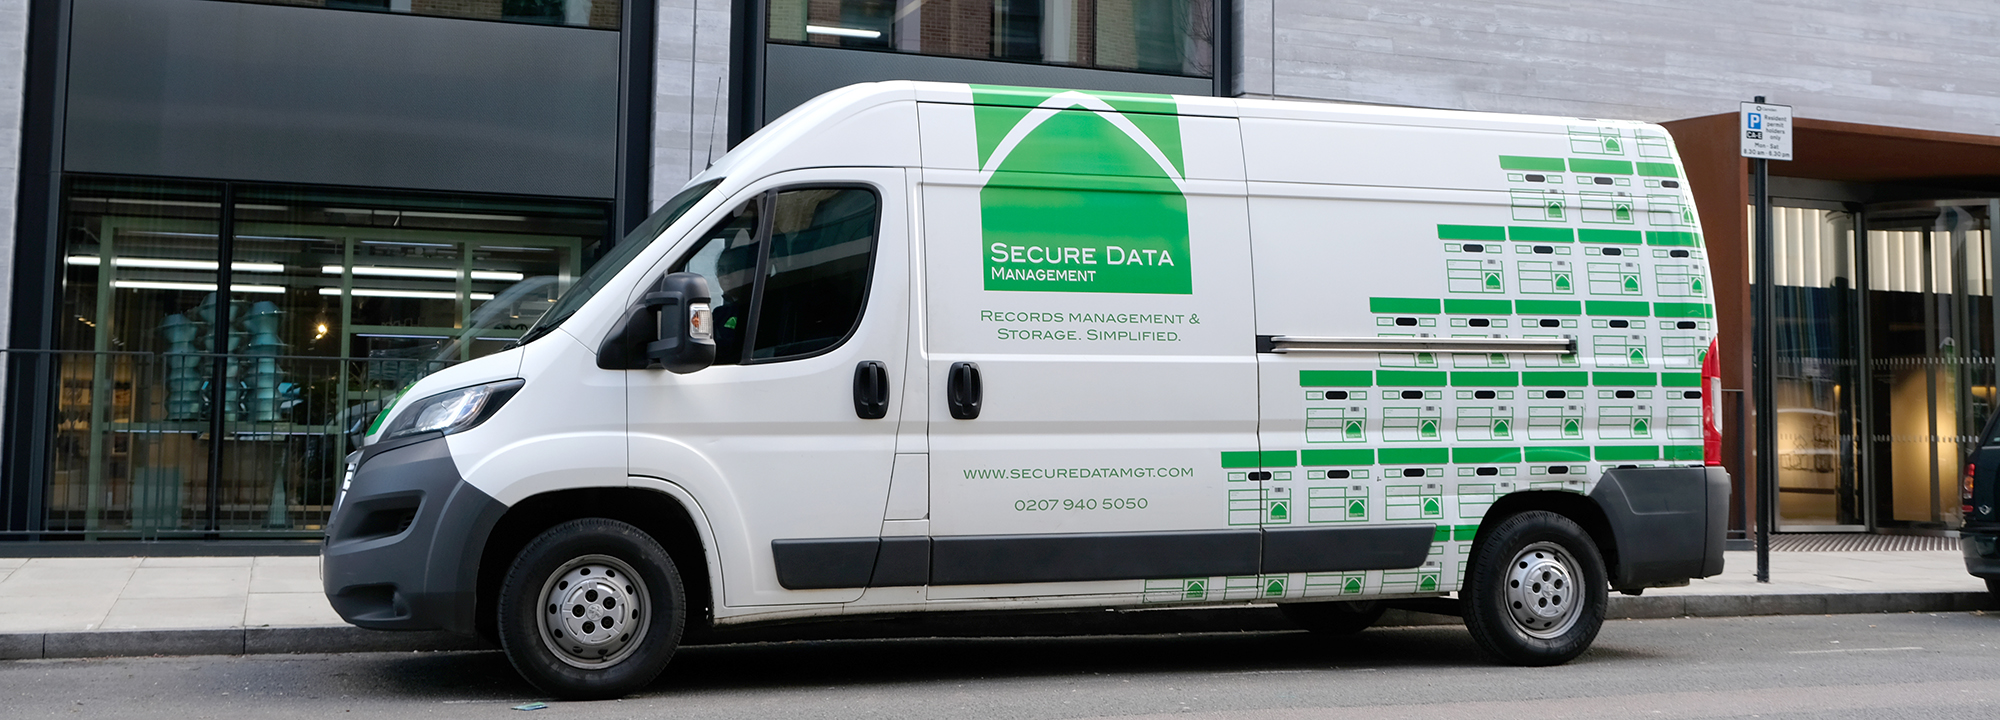 Secure Data MGT Van